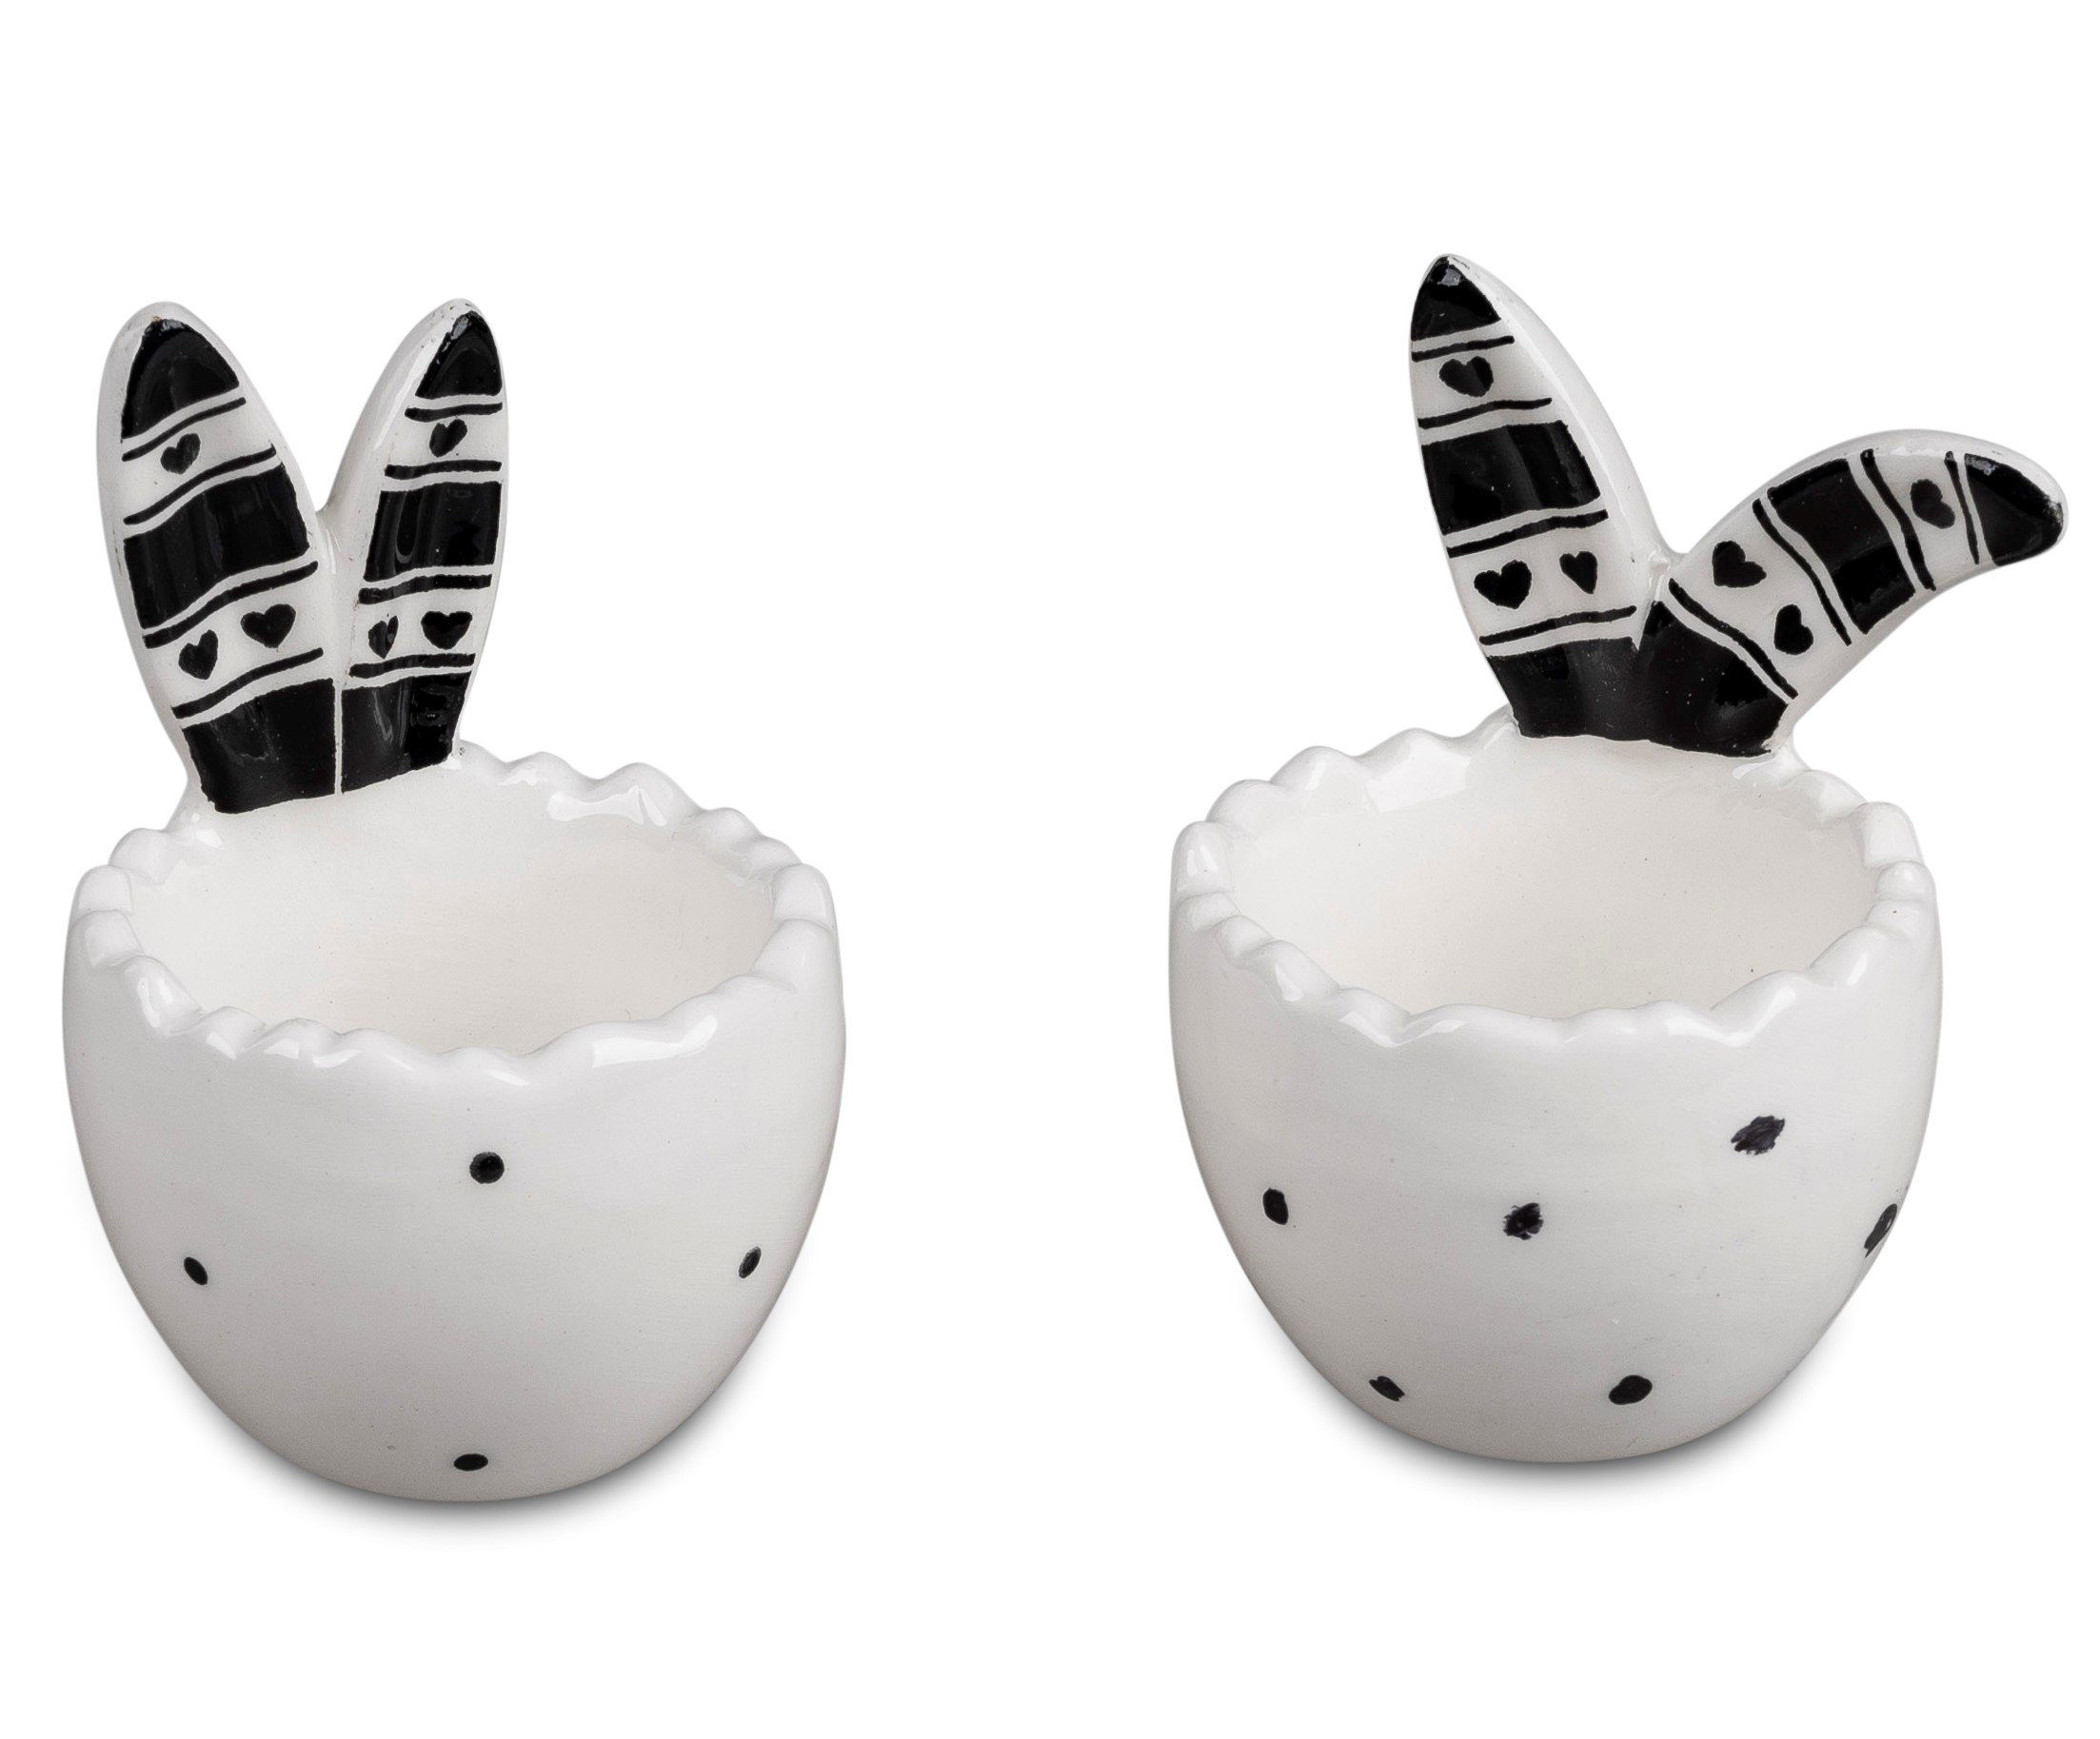 Small-Preis Eierbecher Oster Eierbecher von Formano im 2er Set schwarz weiß Trend Style, aus Keramik Weiß-Schwarz